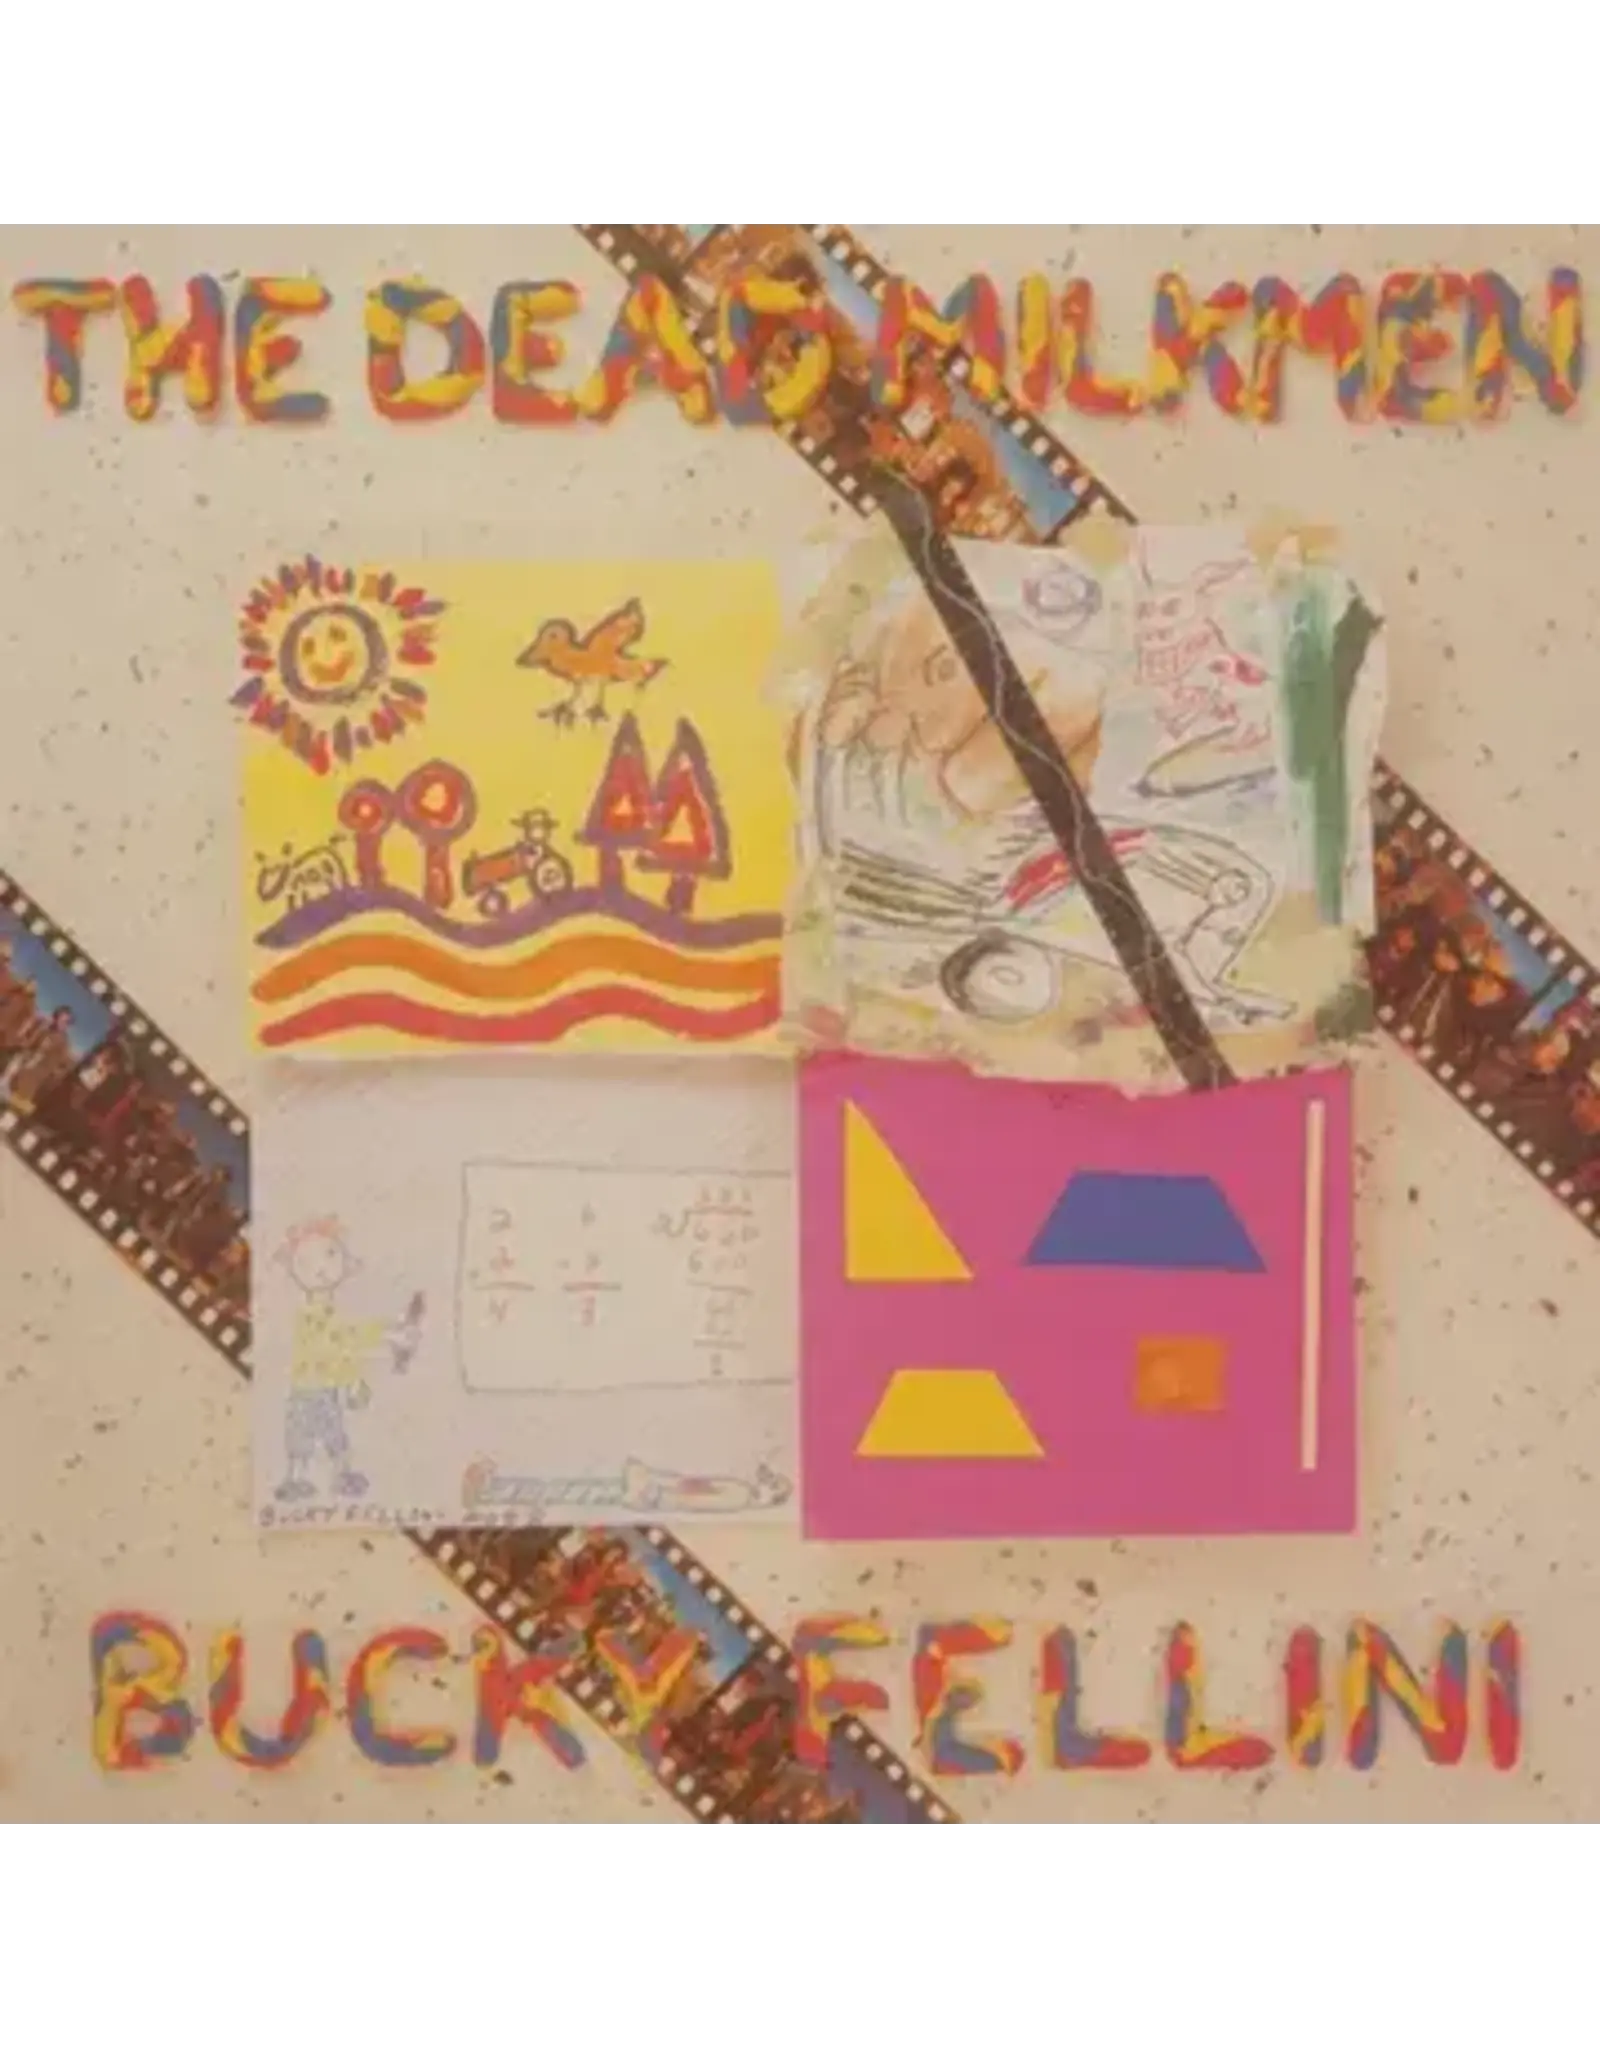 Dead Milkmen: 2024RSD - Bucky Fellini LP